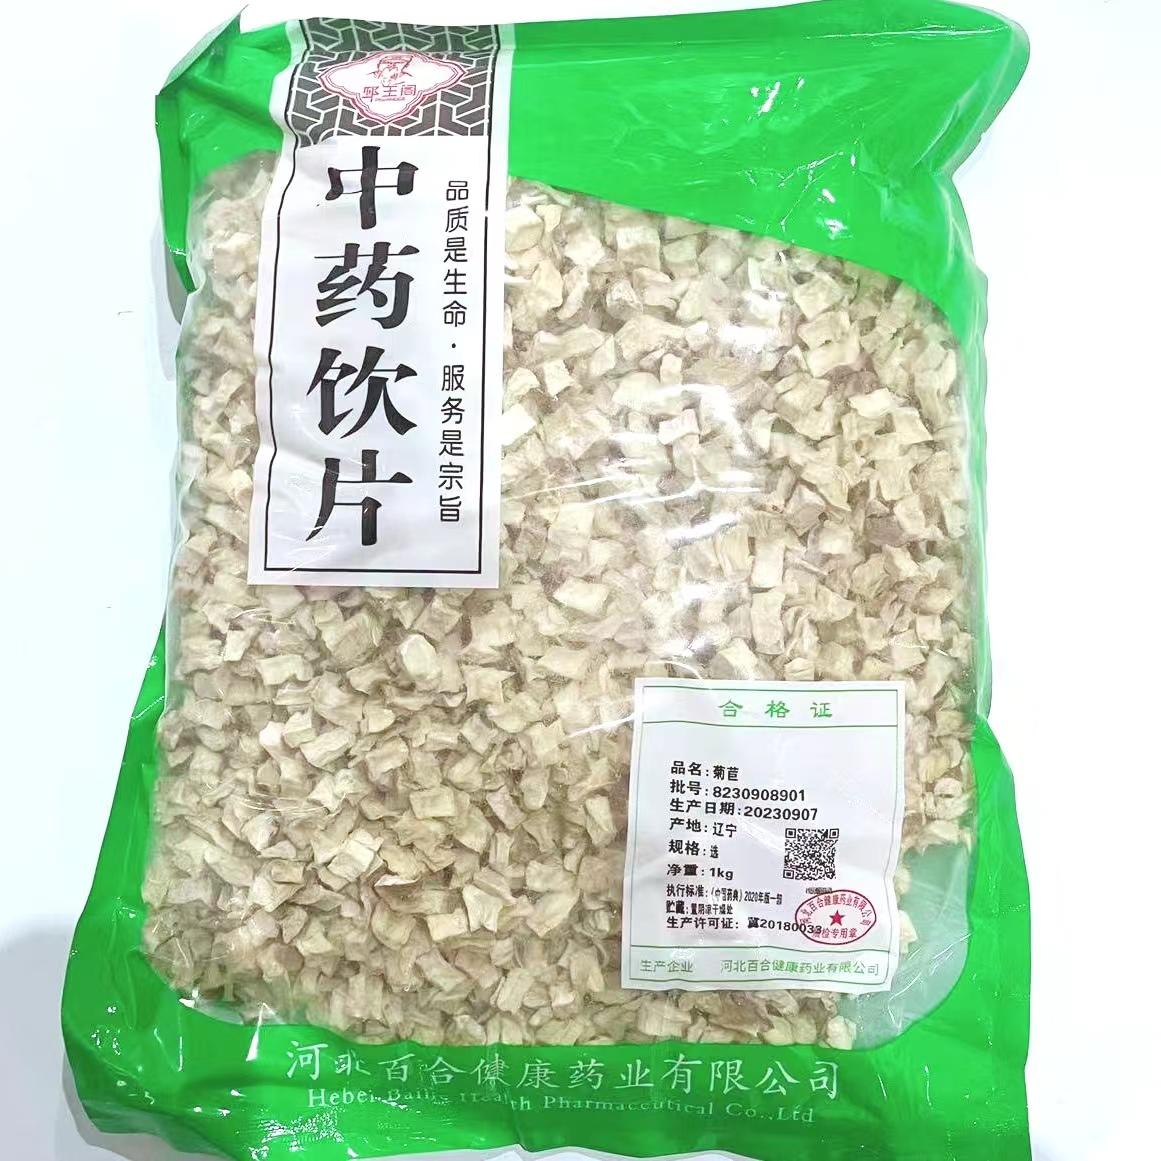 【】菊苣-选-1kg/袋-河北百合健康药业有限公司